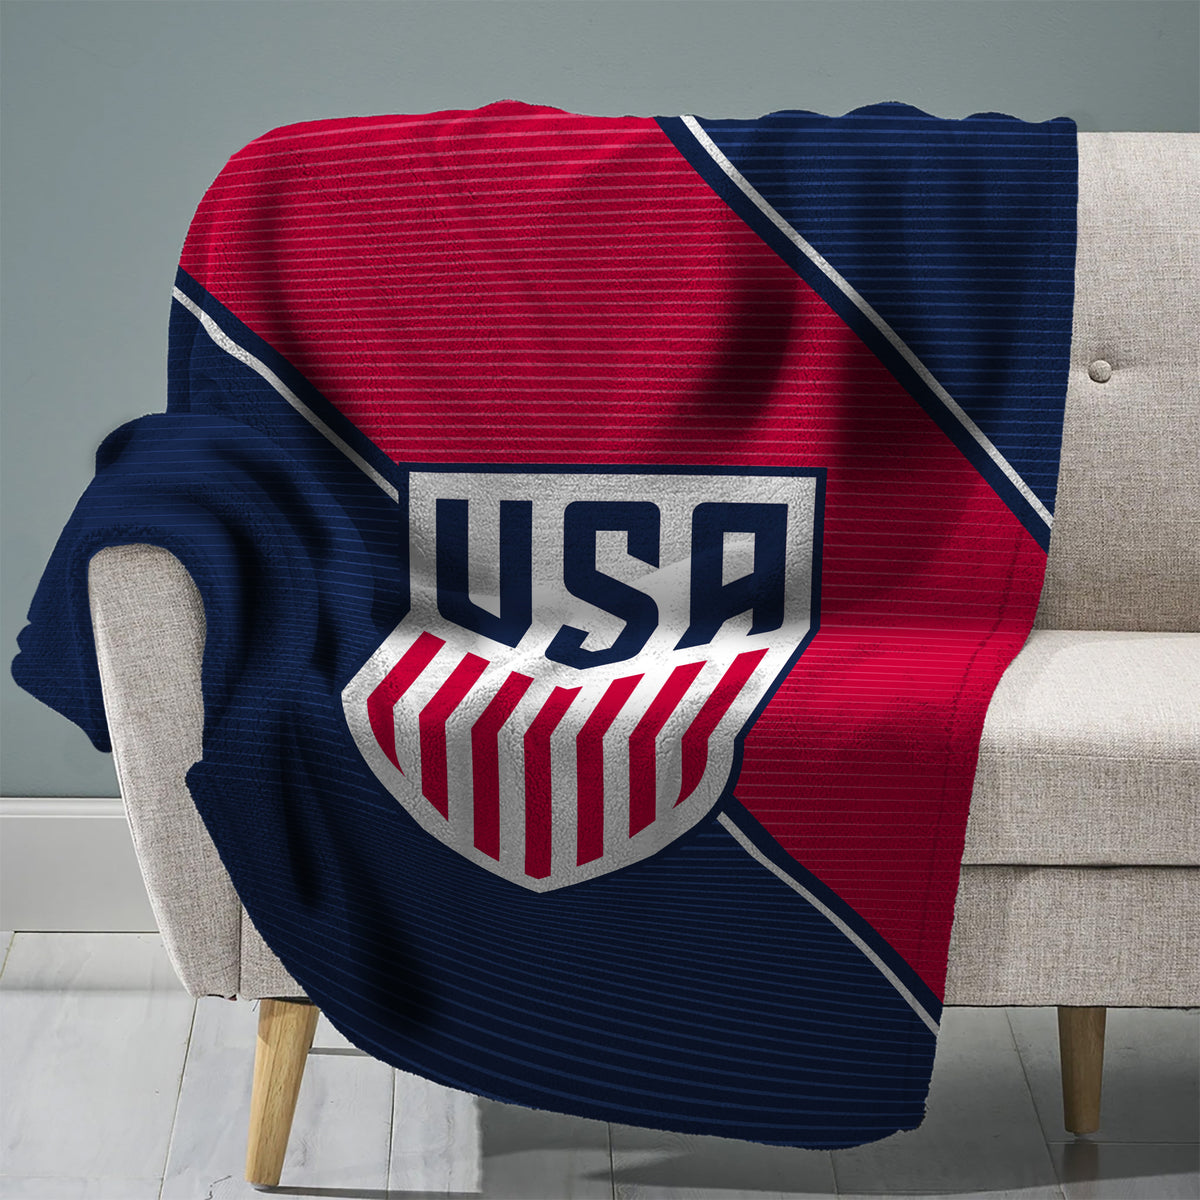 US Soccer Federation Logo 60” x 80” Raschel Plush Throw